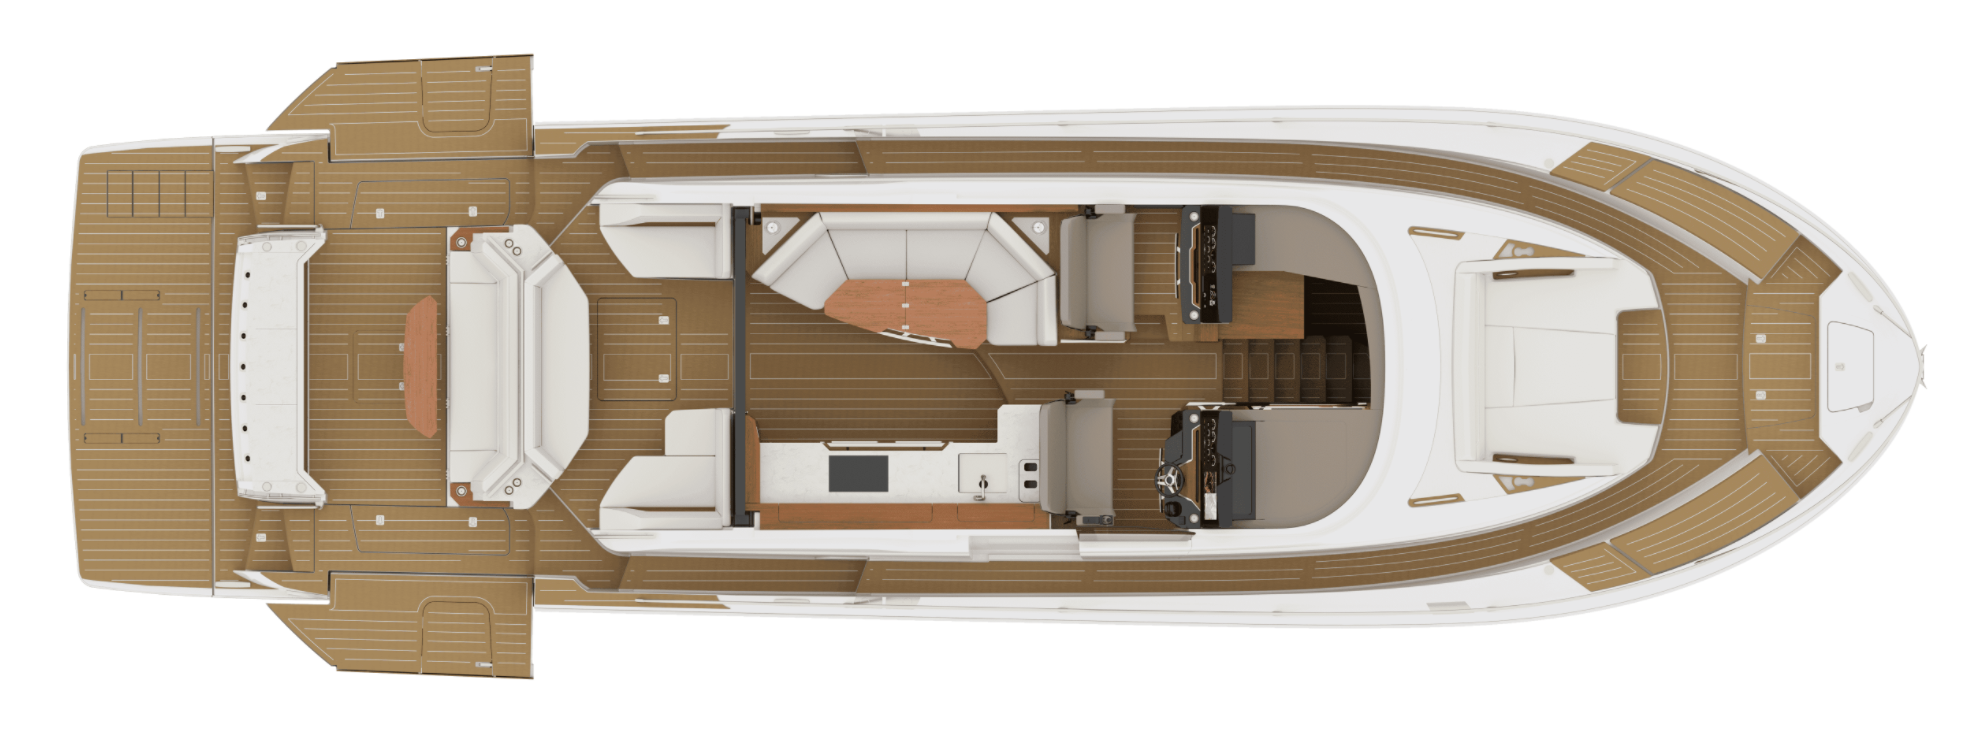 Tiara EX 60 main deck plan, floorplan drawing